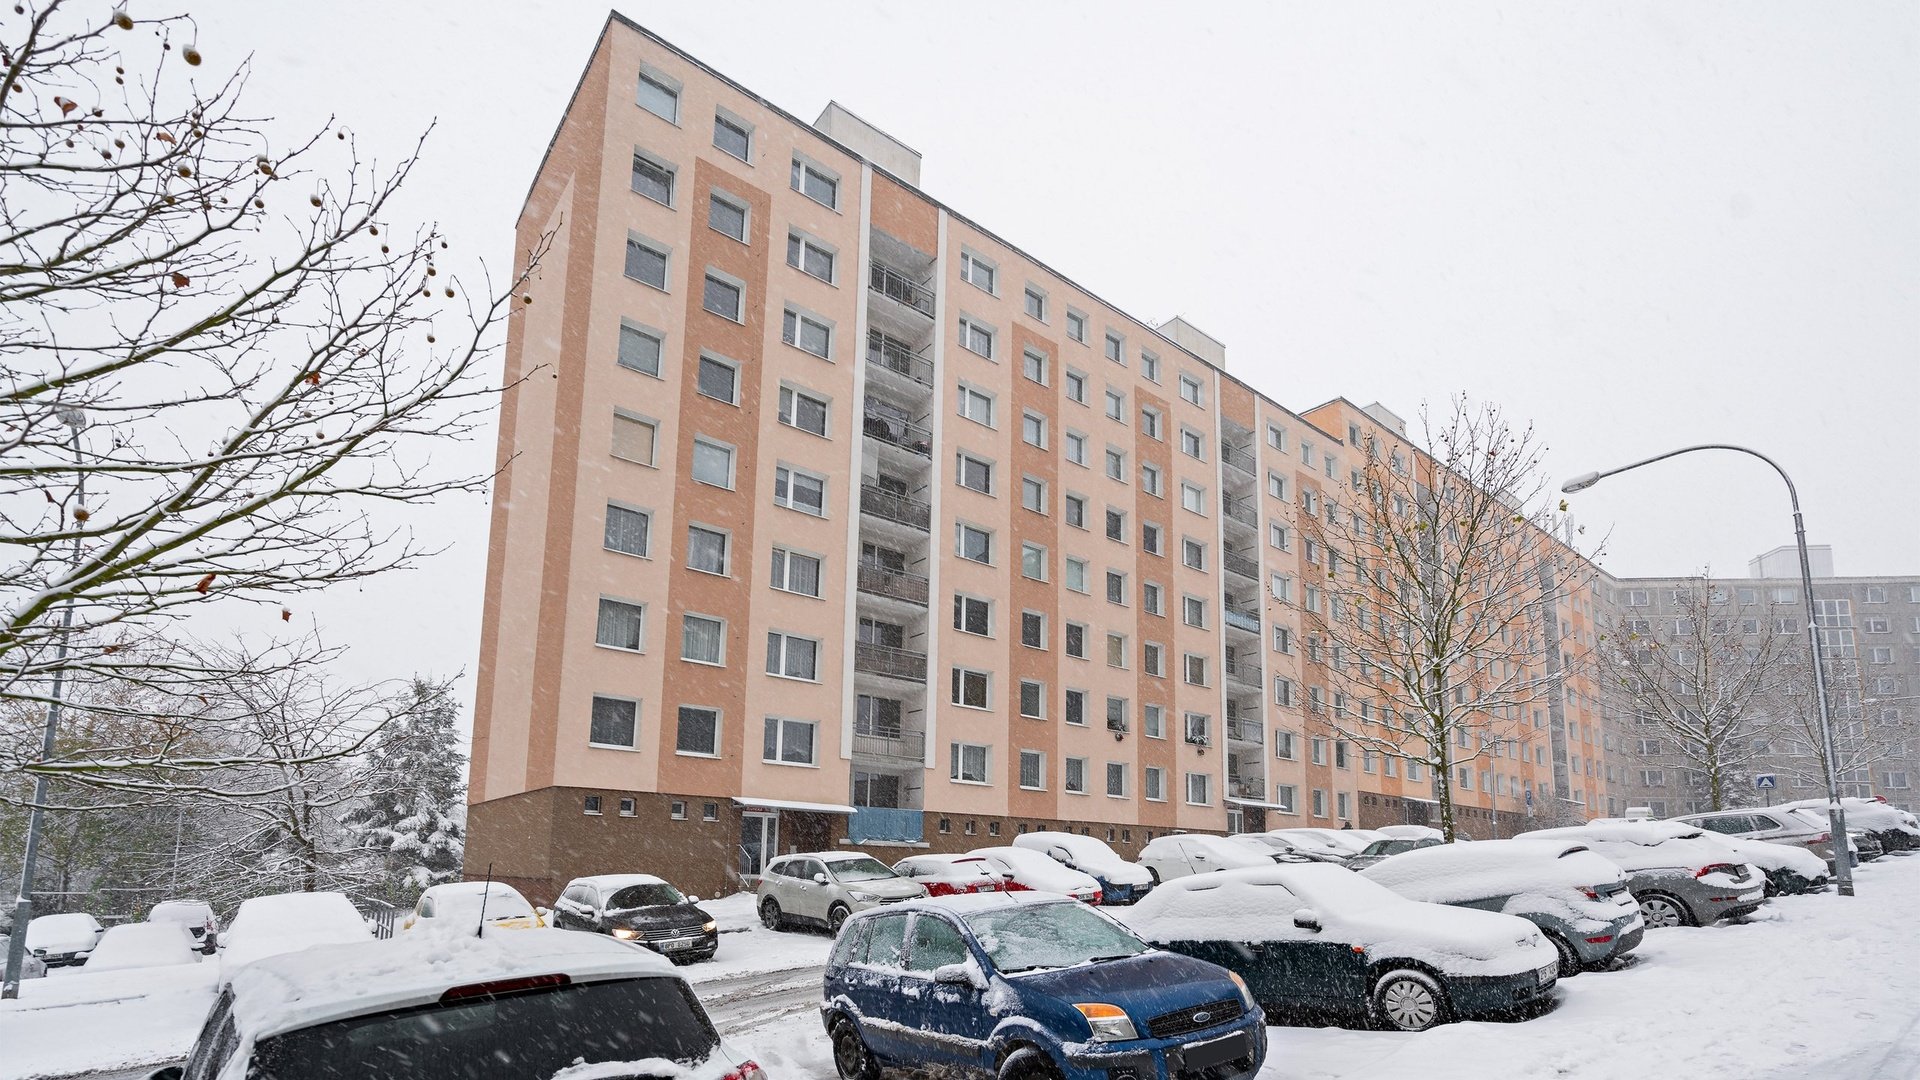 Pronájem prostorného a zrekonstruovaného bytu 4+1, 81 m² , Plzeň- Bolevec